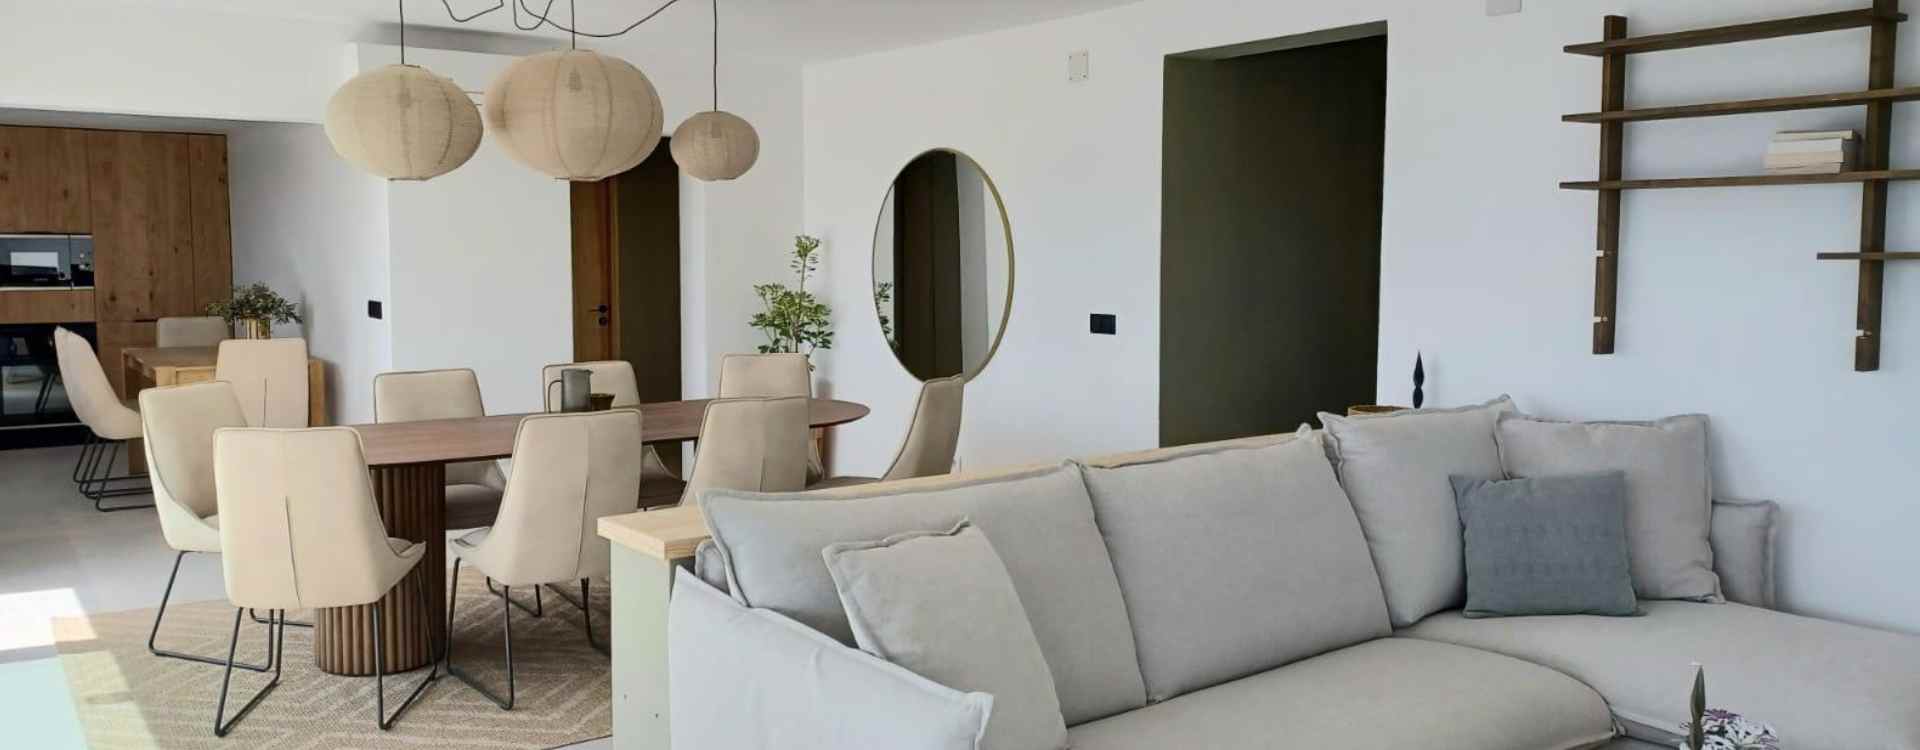 Cosy interior - Ibiza - rental home 